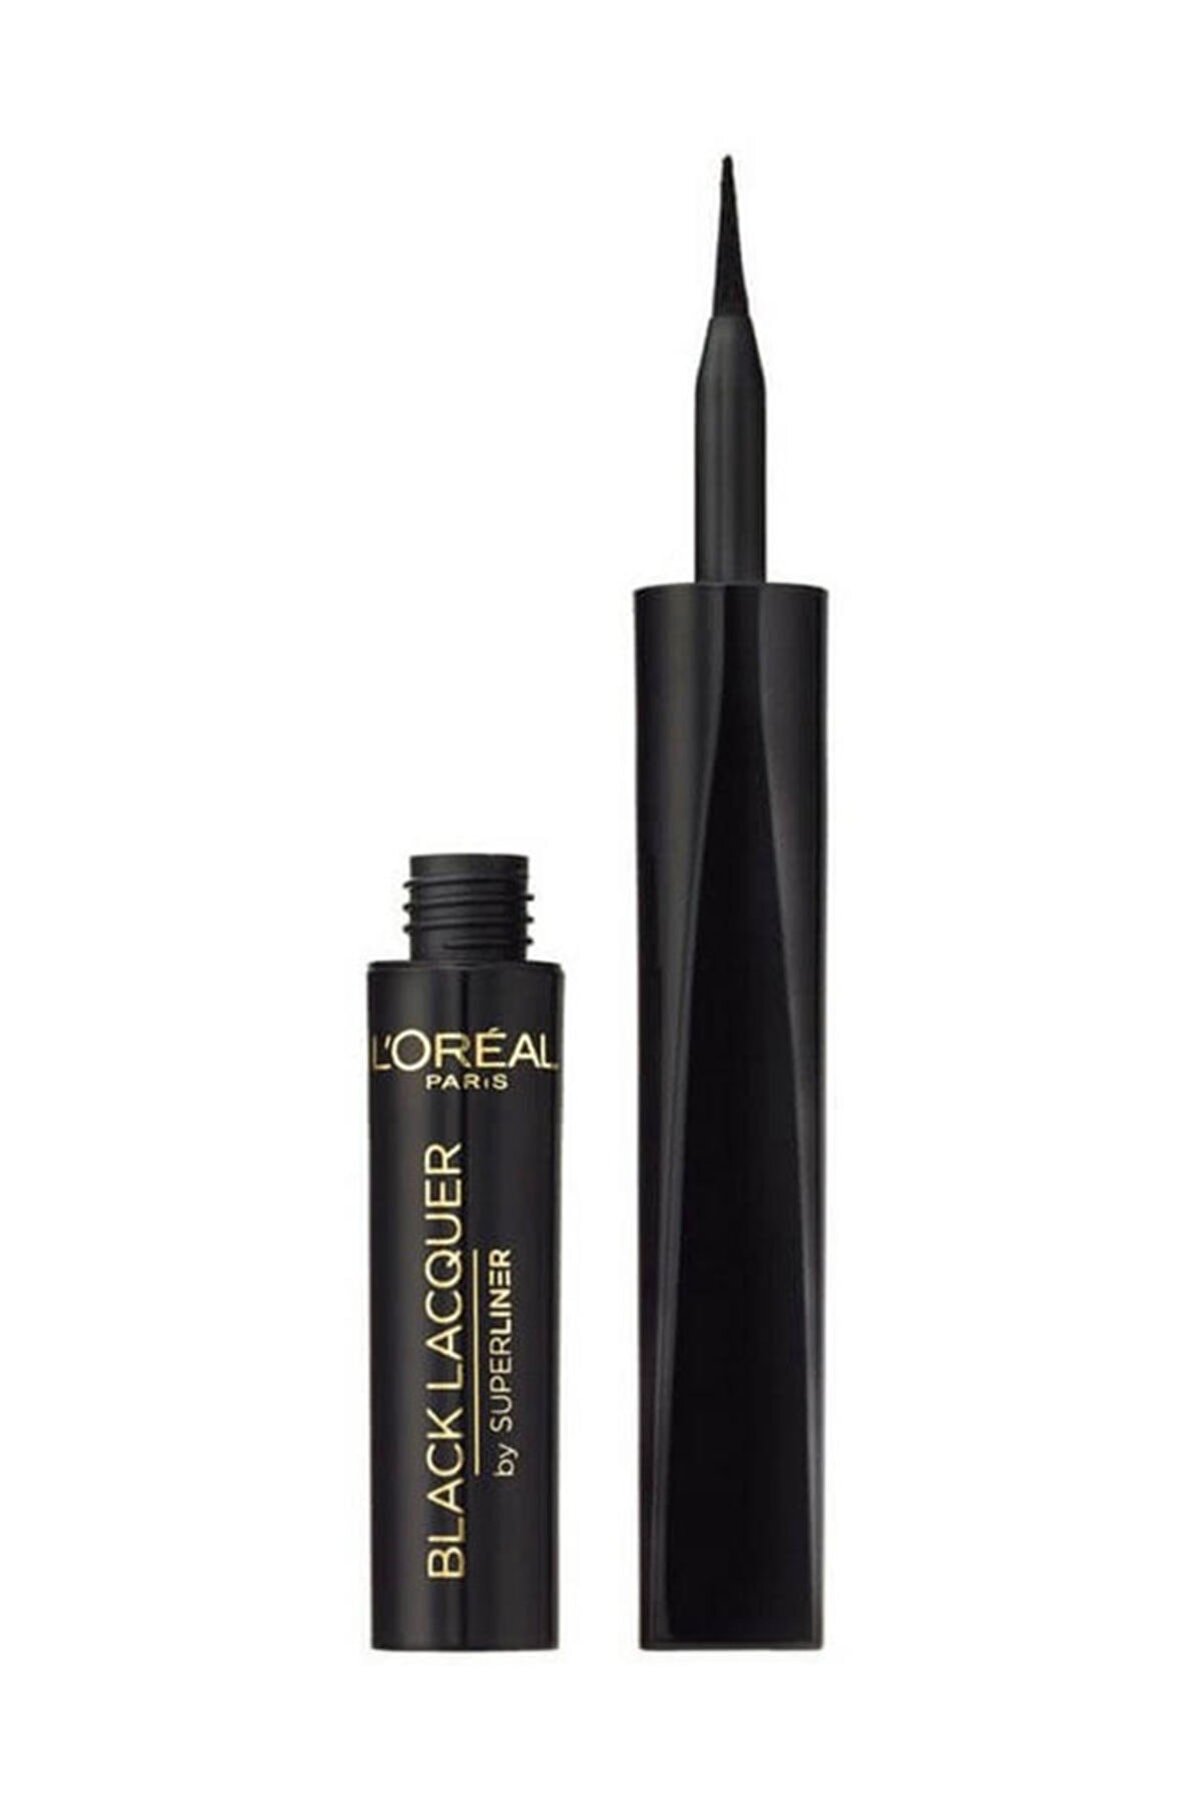 L'Oreal Paris Suya Dayanıklı Siyah Eyeliner - Super Liner Black Lacquer Waterproof Eyeliner 6 ml 3600522025252